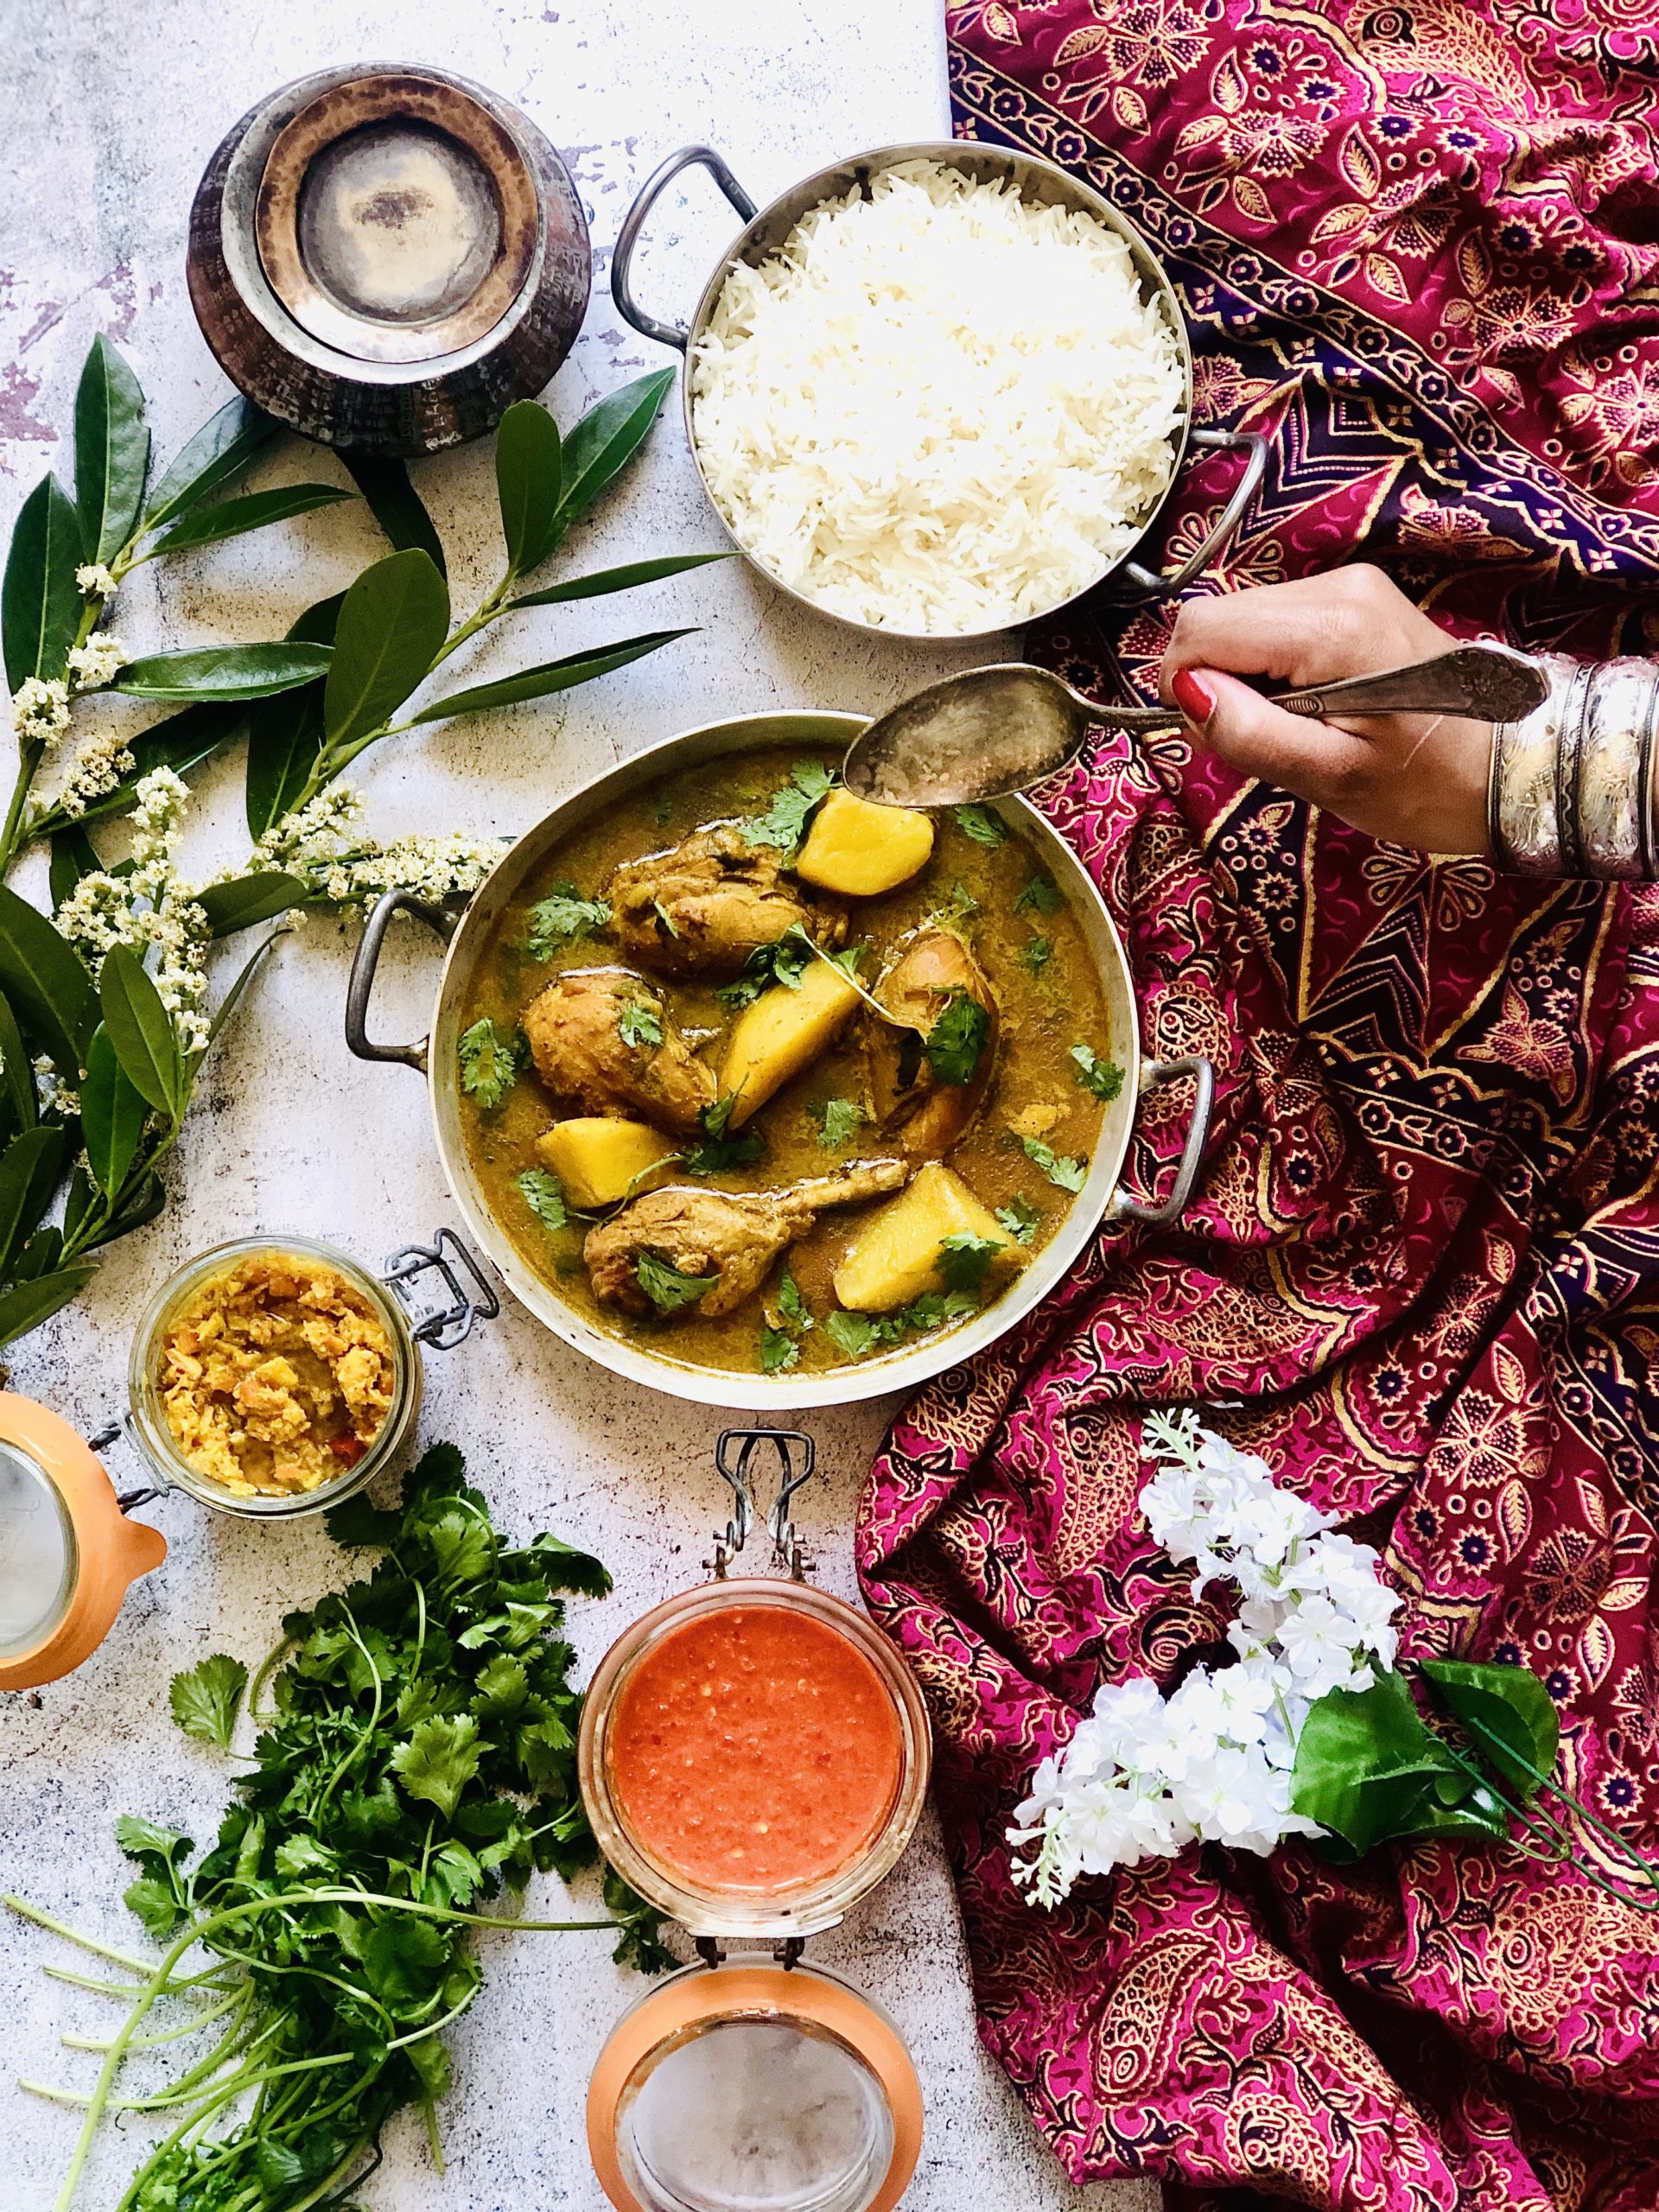 Comment préparer le poulet au curry vert indien: recette facile